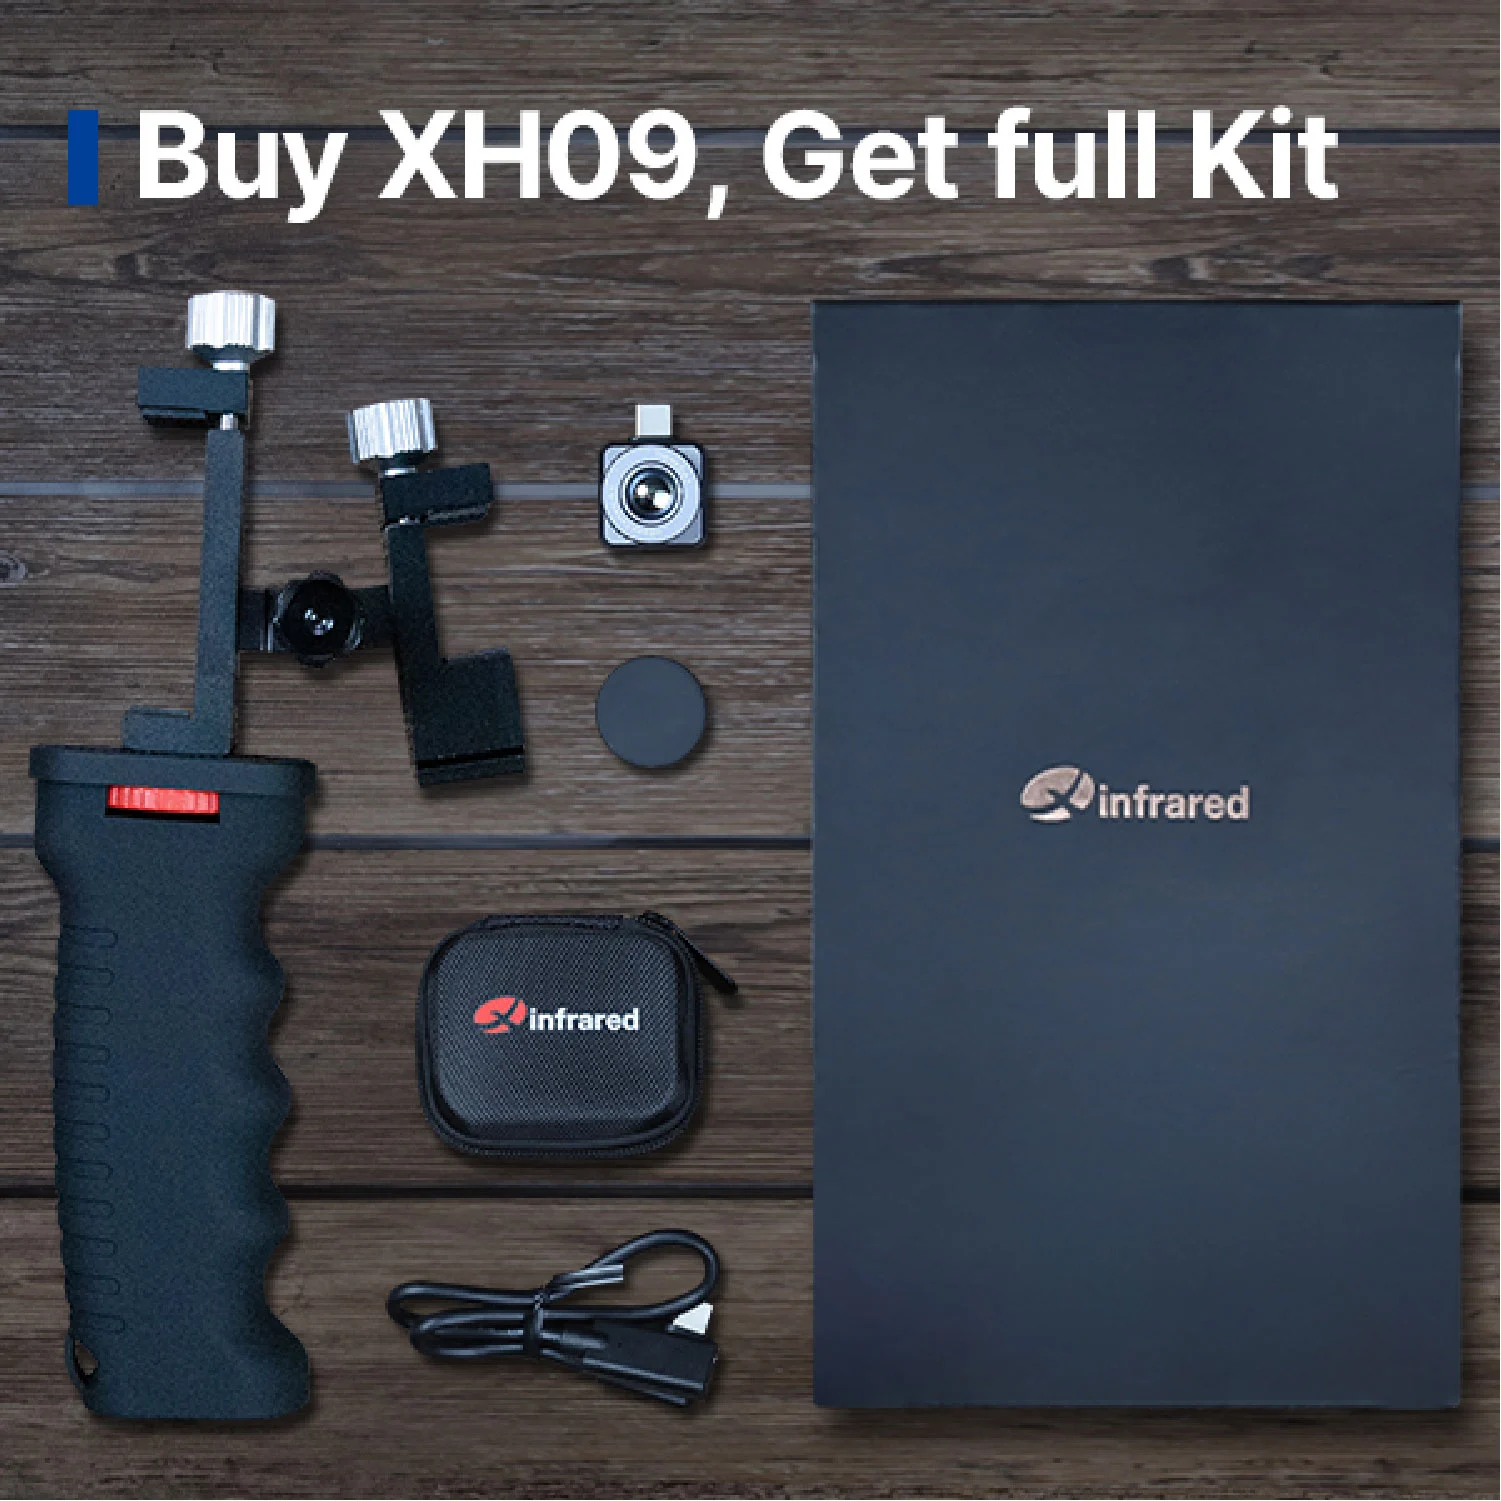 Kaufen Sie XH09, Holen Sie sich volles Kit